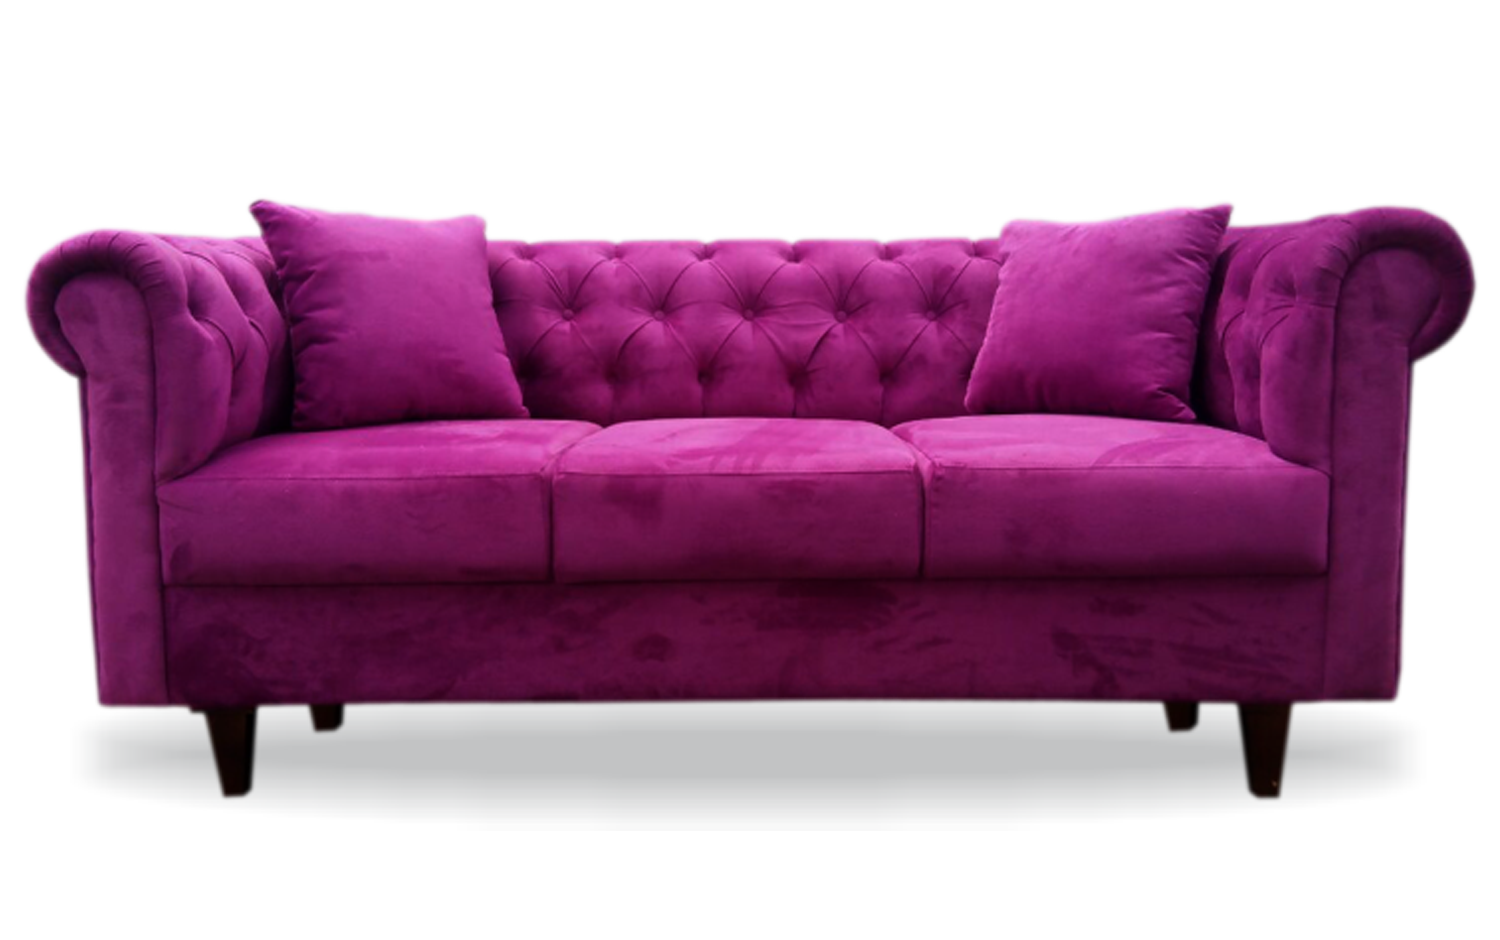  Sofa  Luxury Bisa Custom  Ukuran dan Warna Harga Rp 3 300 